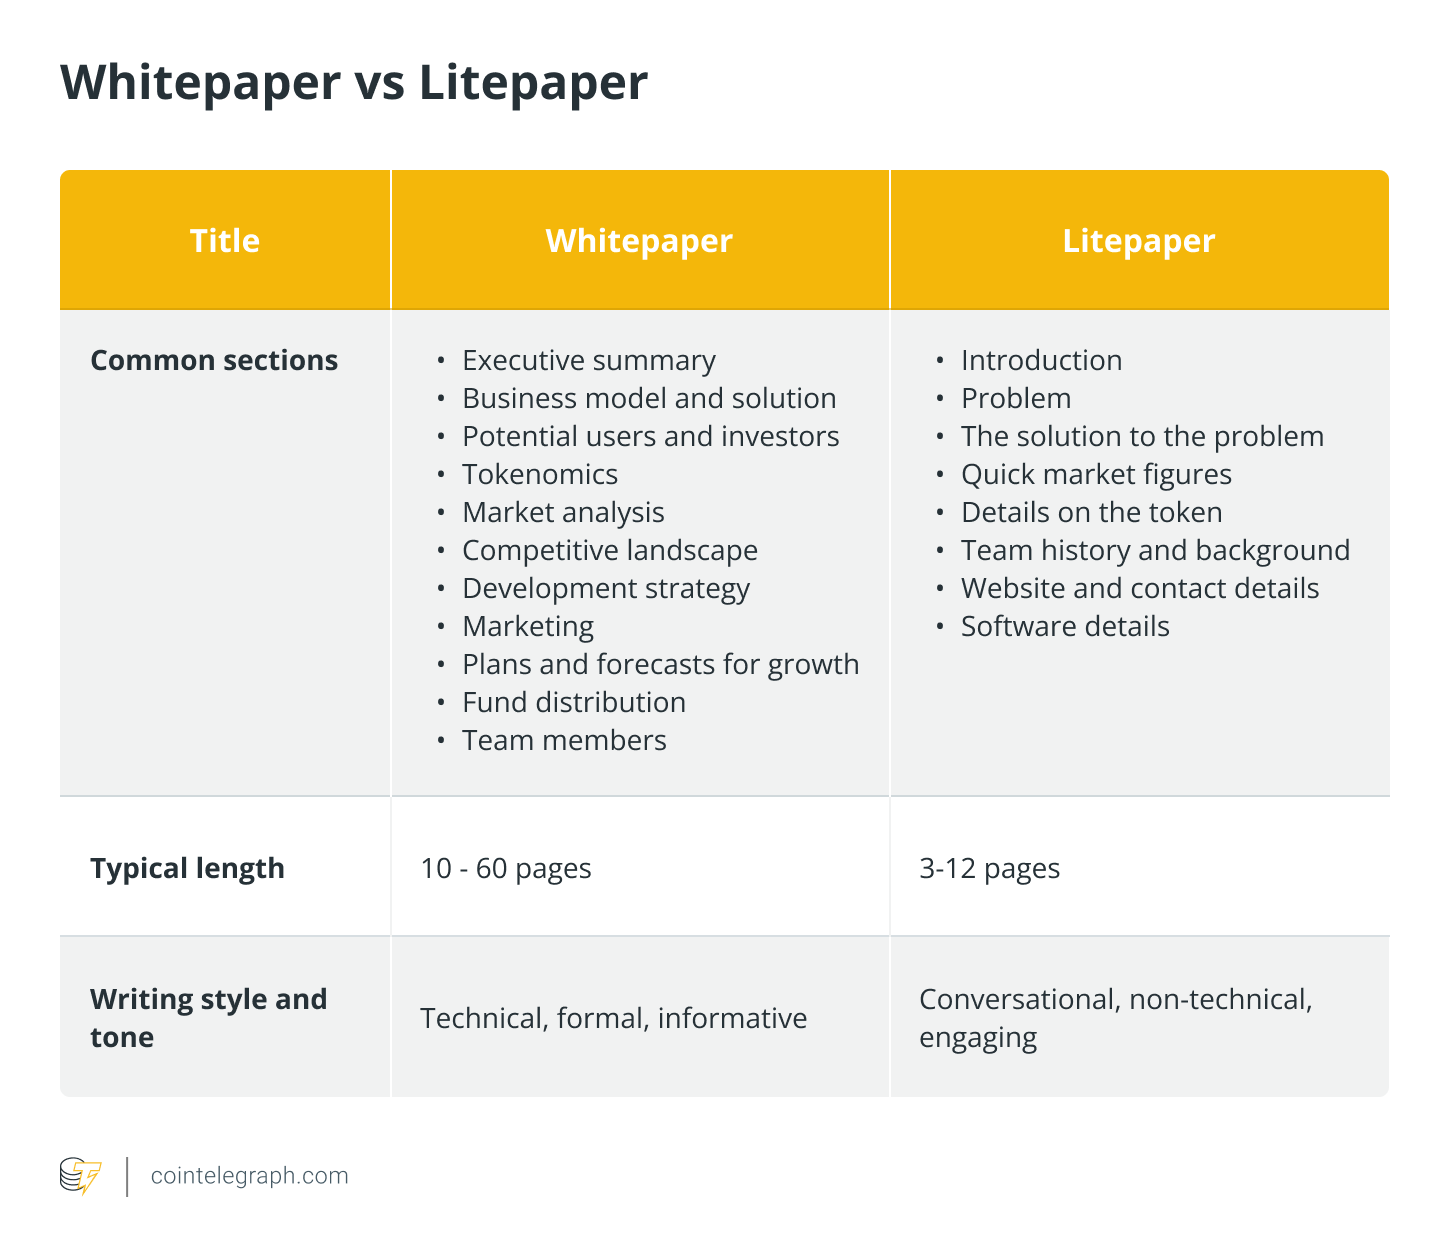 Whitepaper vs Litepaper